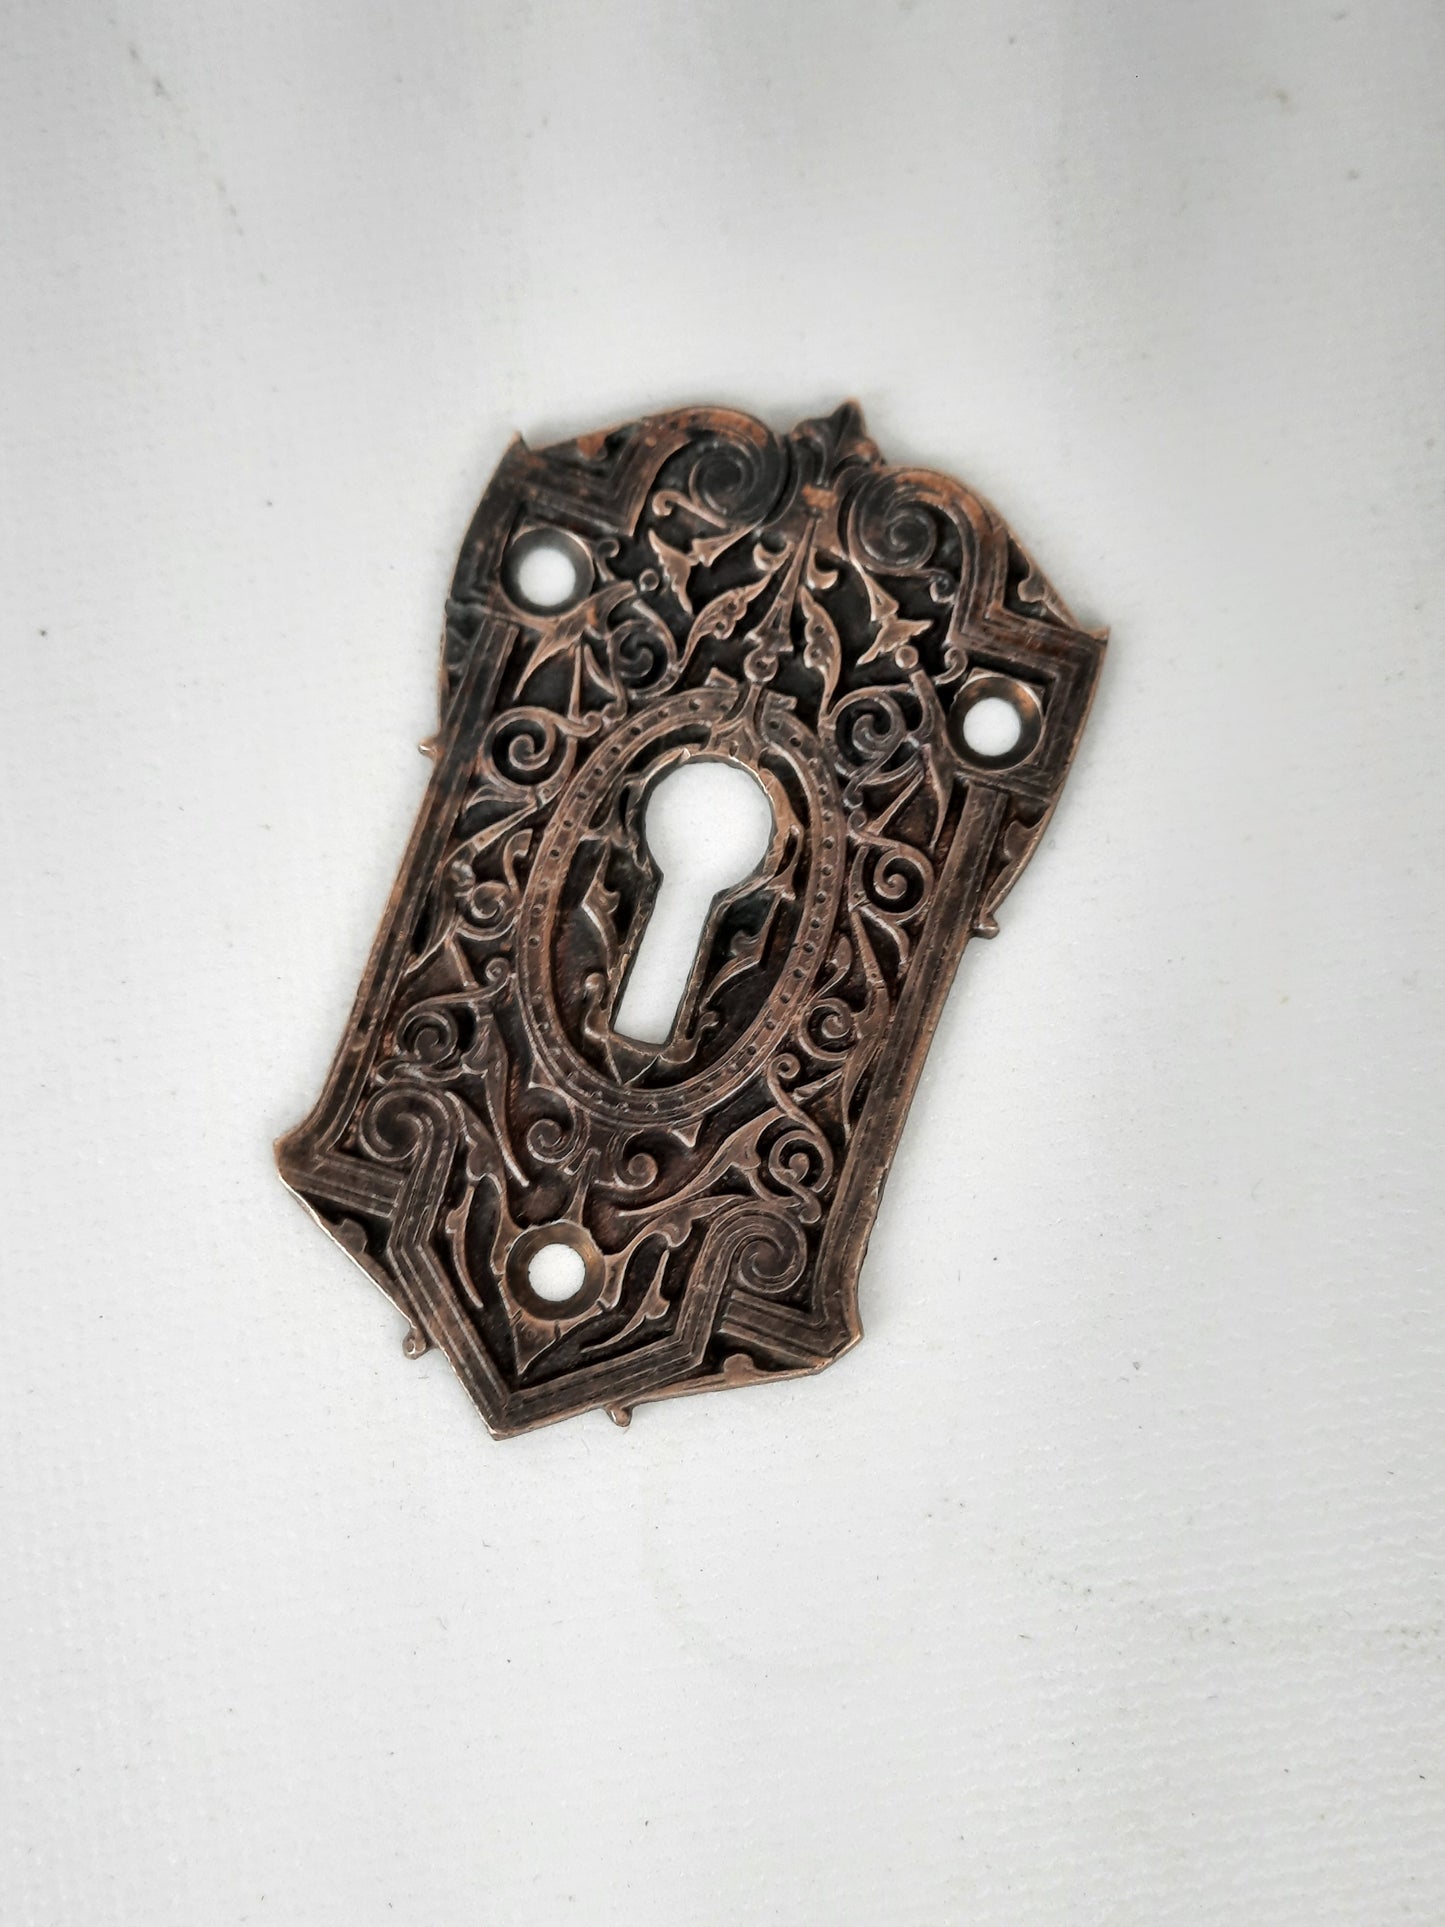 Large Antique Victorian Era Keyhole Escutcheon, Antique Key Hole Plate 022707